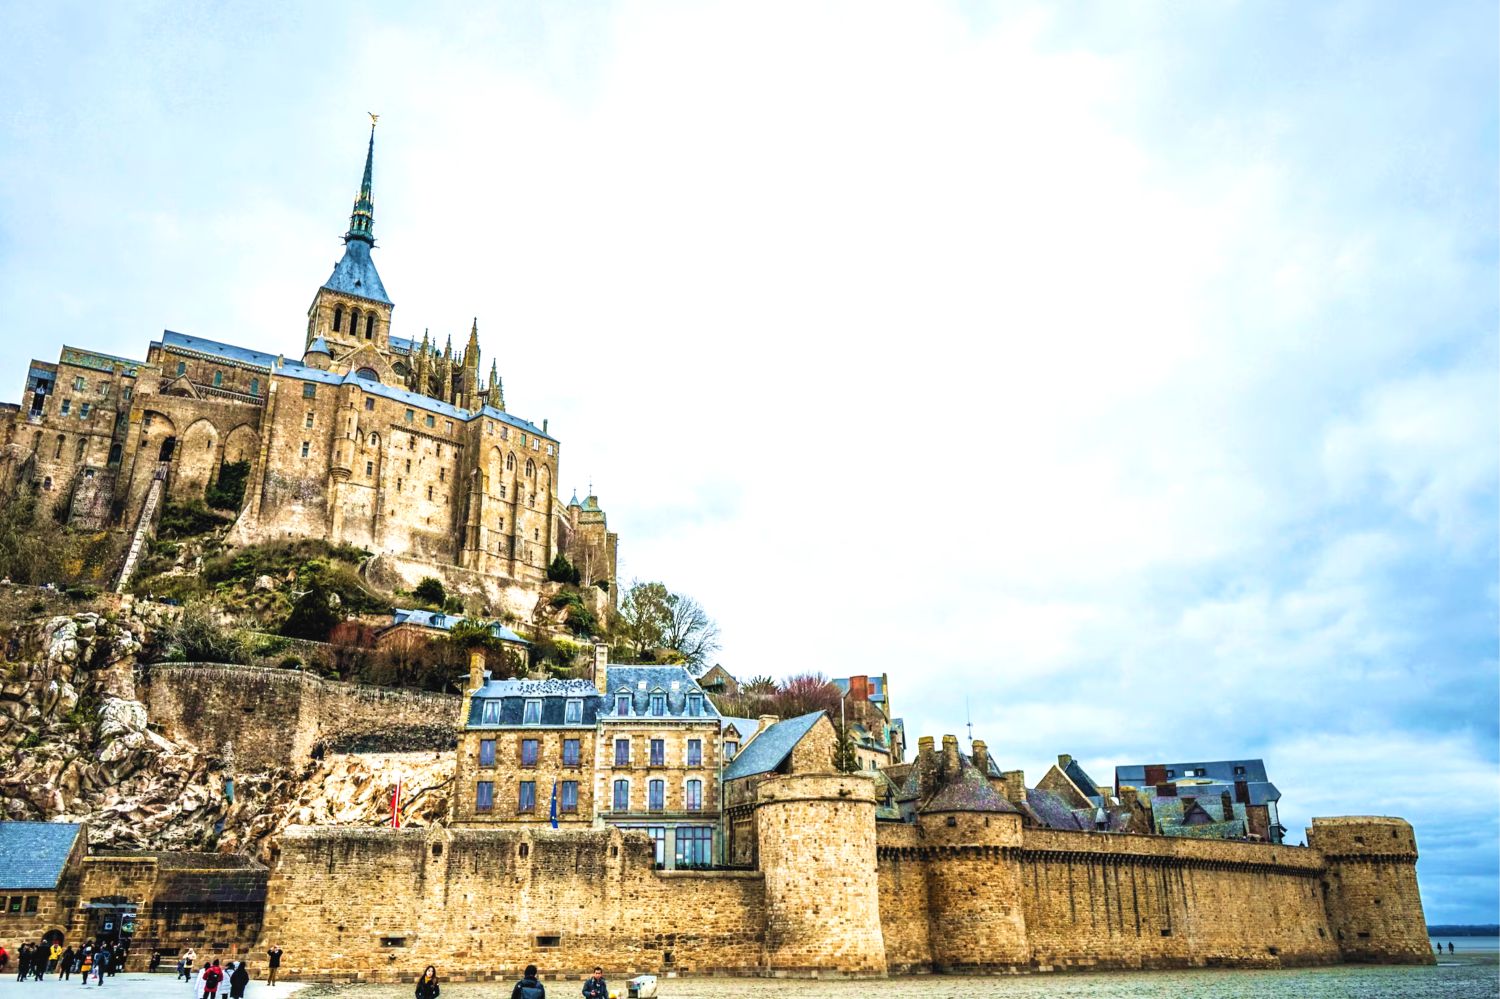 Khám phá Mont Saint Michel - biểu tượng của người Pháp về sự kiên cường và tự do  - Ảnh 11.